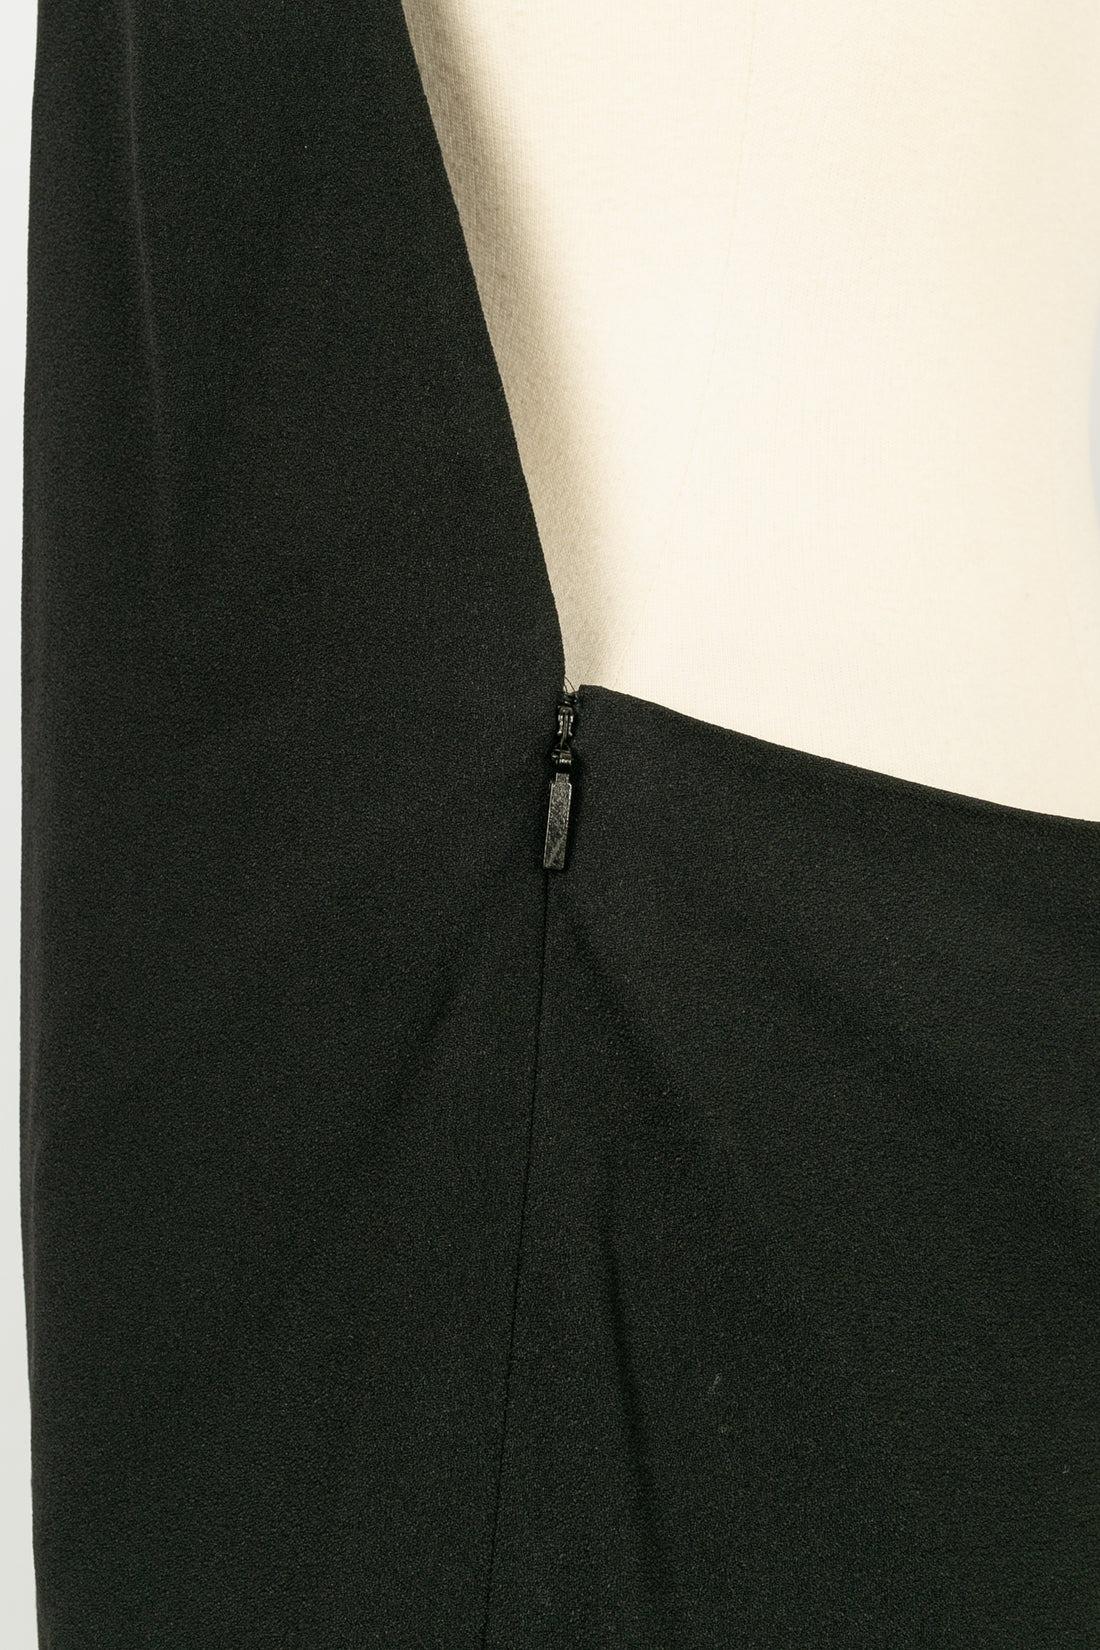 Yves Saint Laurent Short Backless Black and White Dress For Sale 3